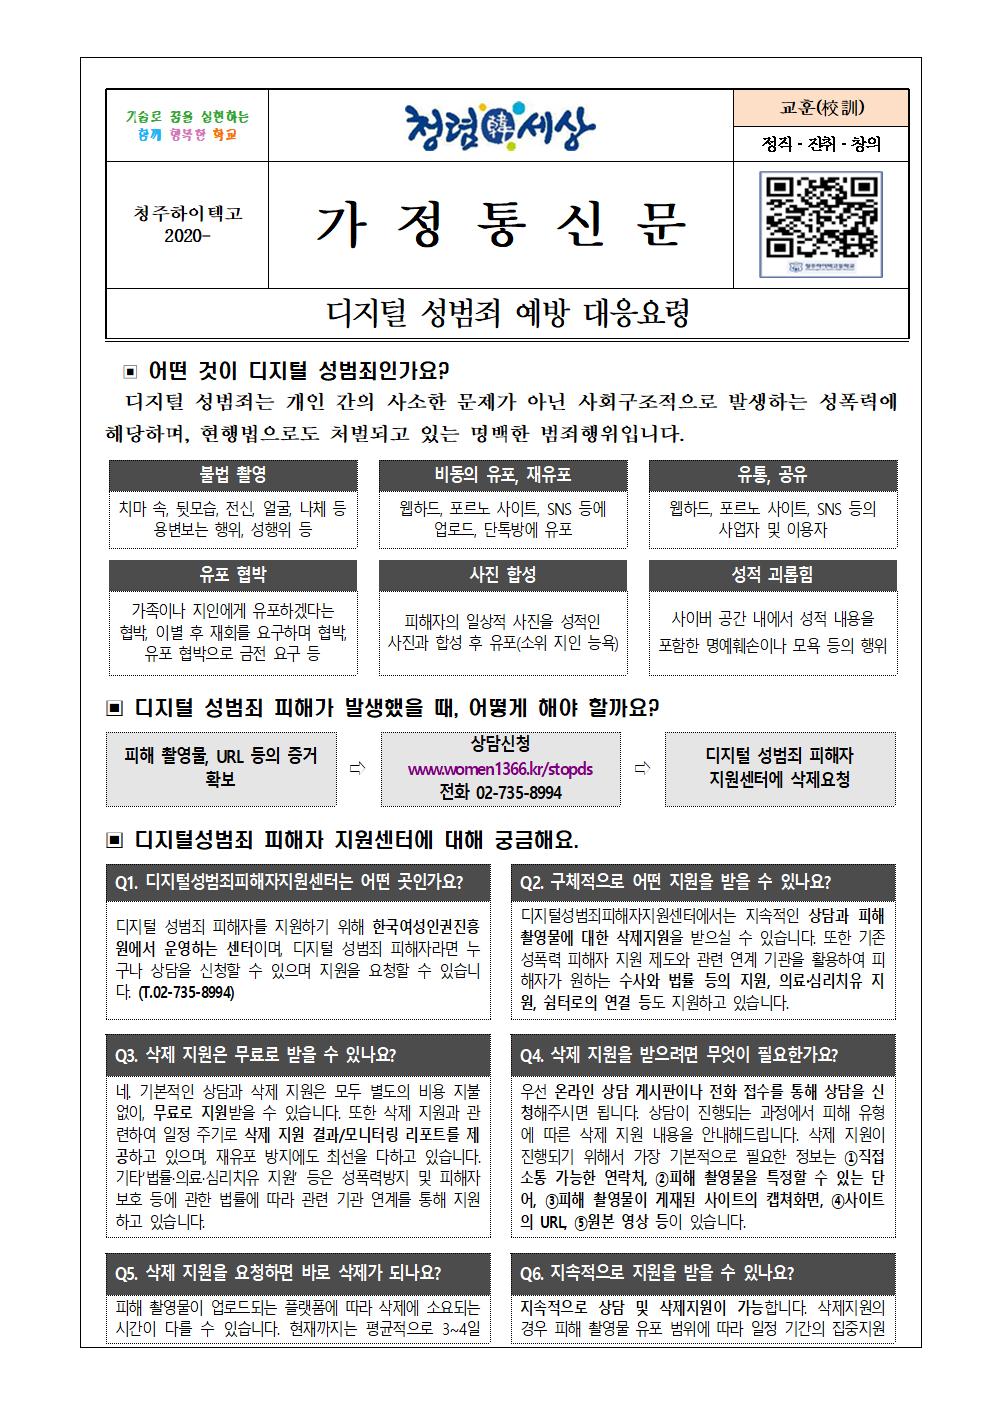 디지털 성범죄 예방 대응요령 안내문001